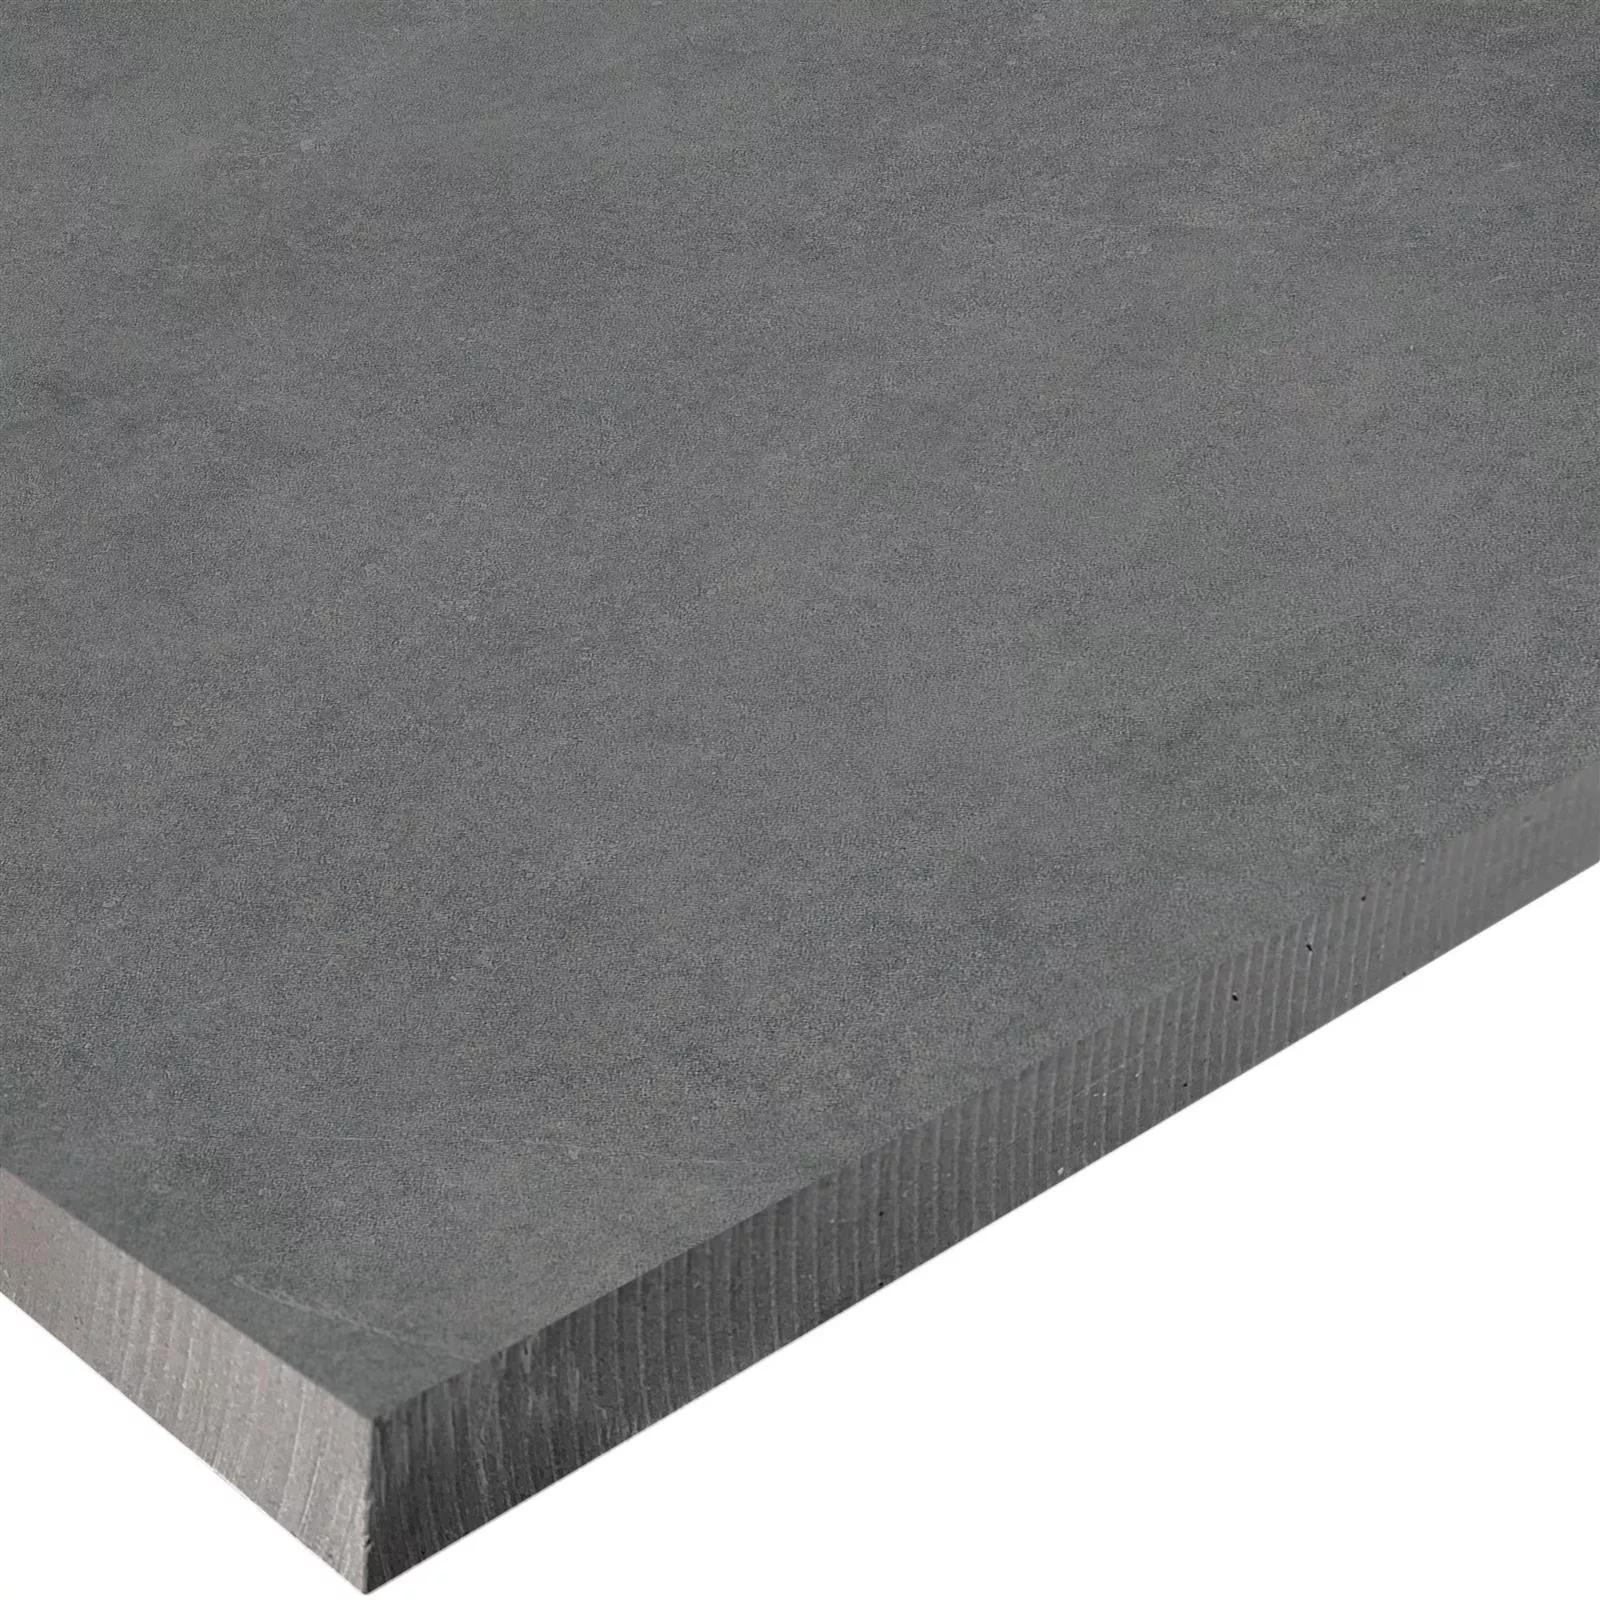 Losas Para Terrazas Aspecto De Cemento Glinde Antracita 60x60cm